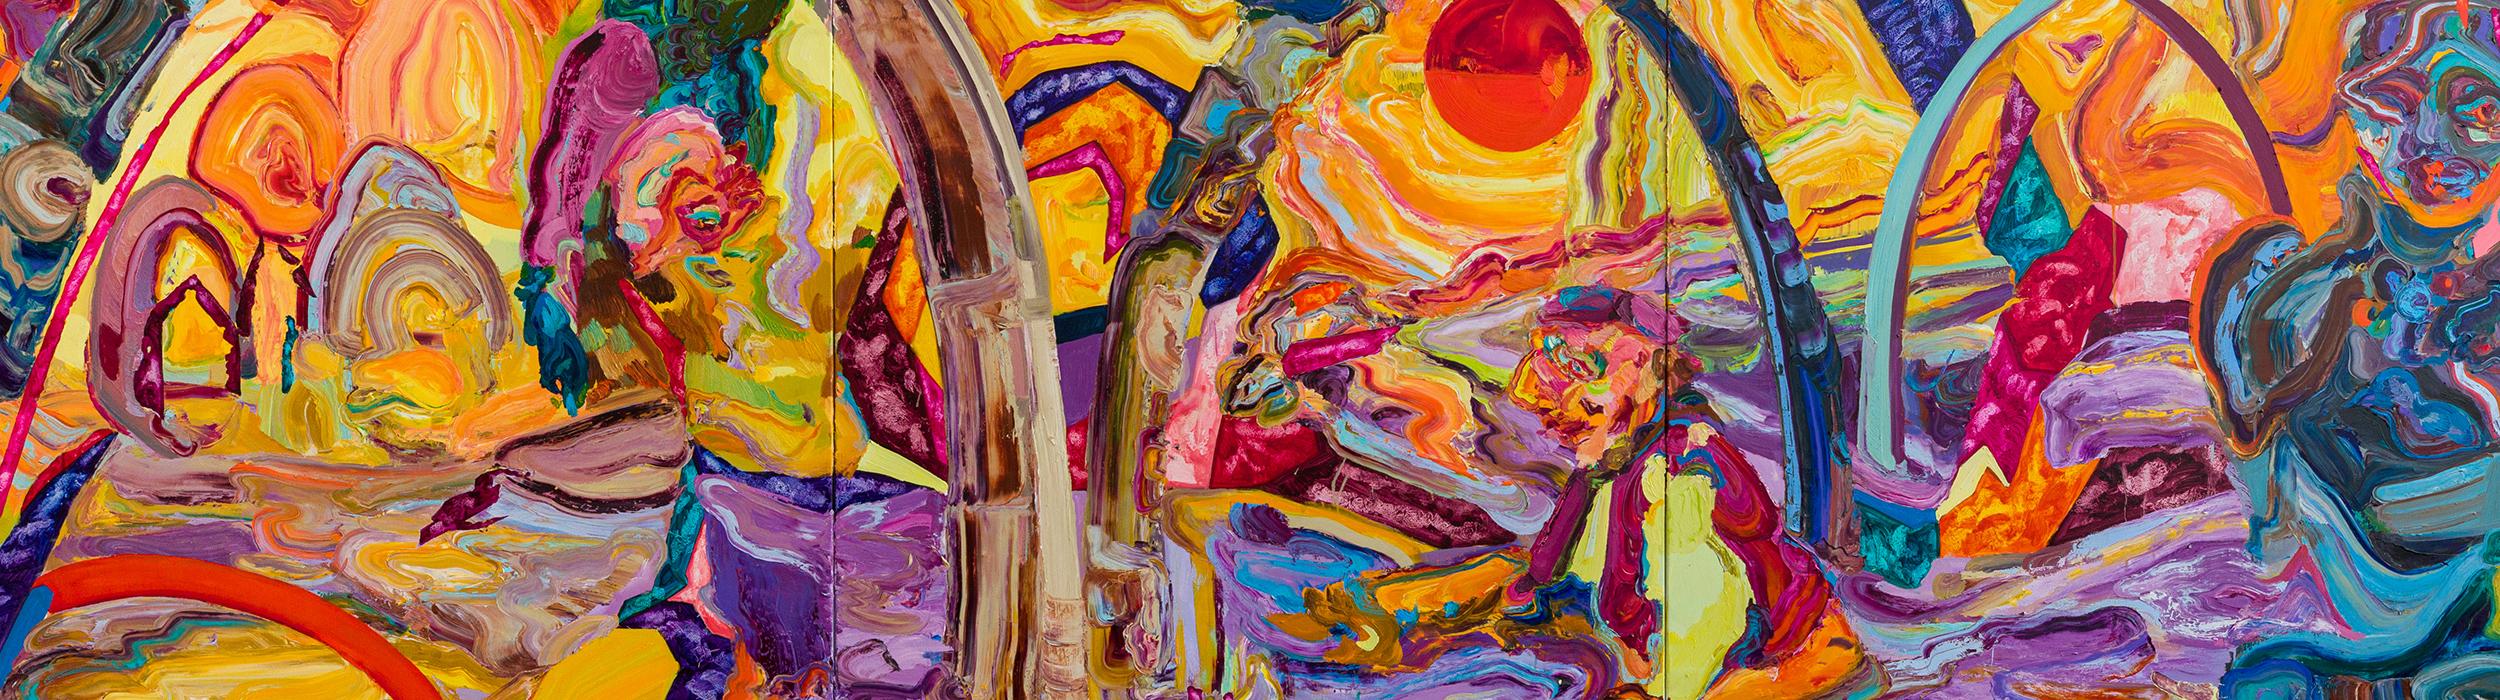 Miryam Haddad, "Le soleil flambe sous le regard des pierres", 2021. Courtesy de l’artiste et Art : Concept, Paris. Collection Privée. Crédit photo : Romain Darnaud